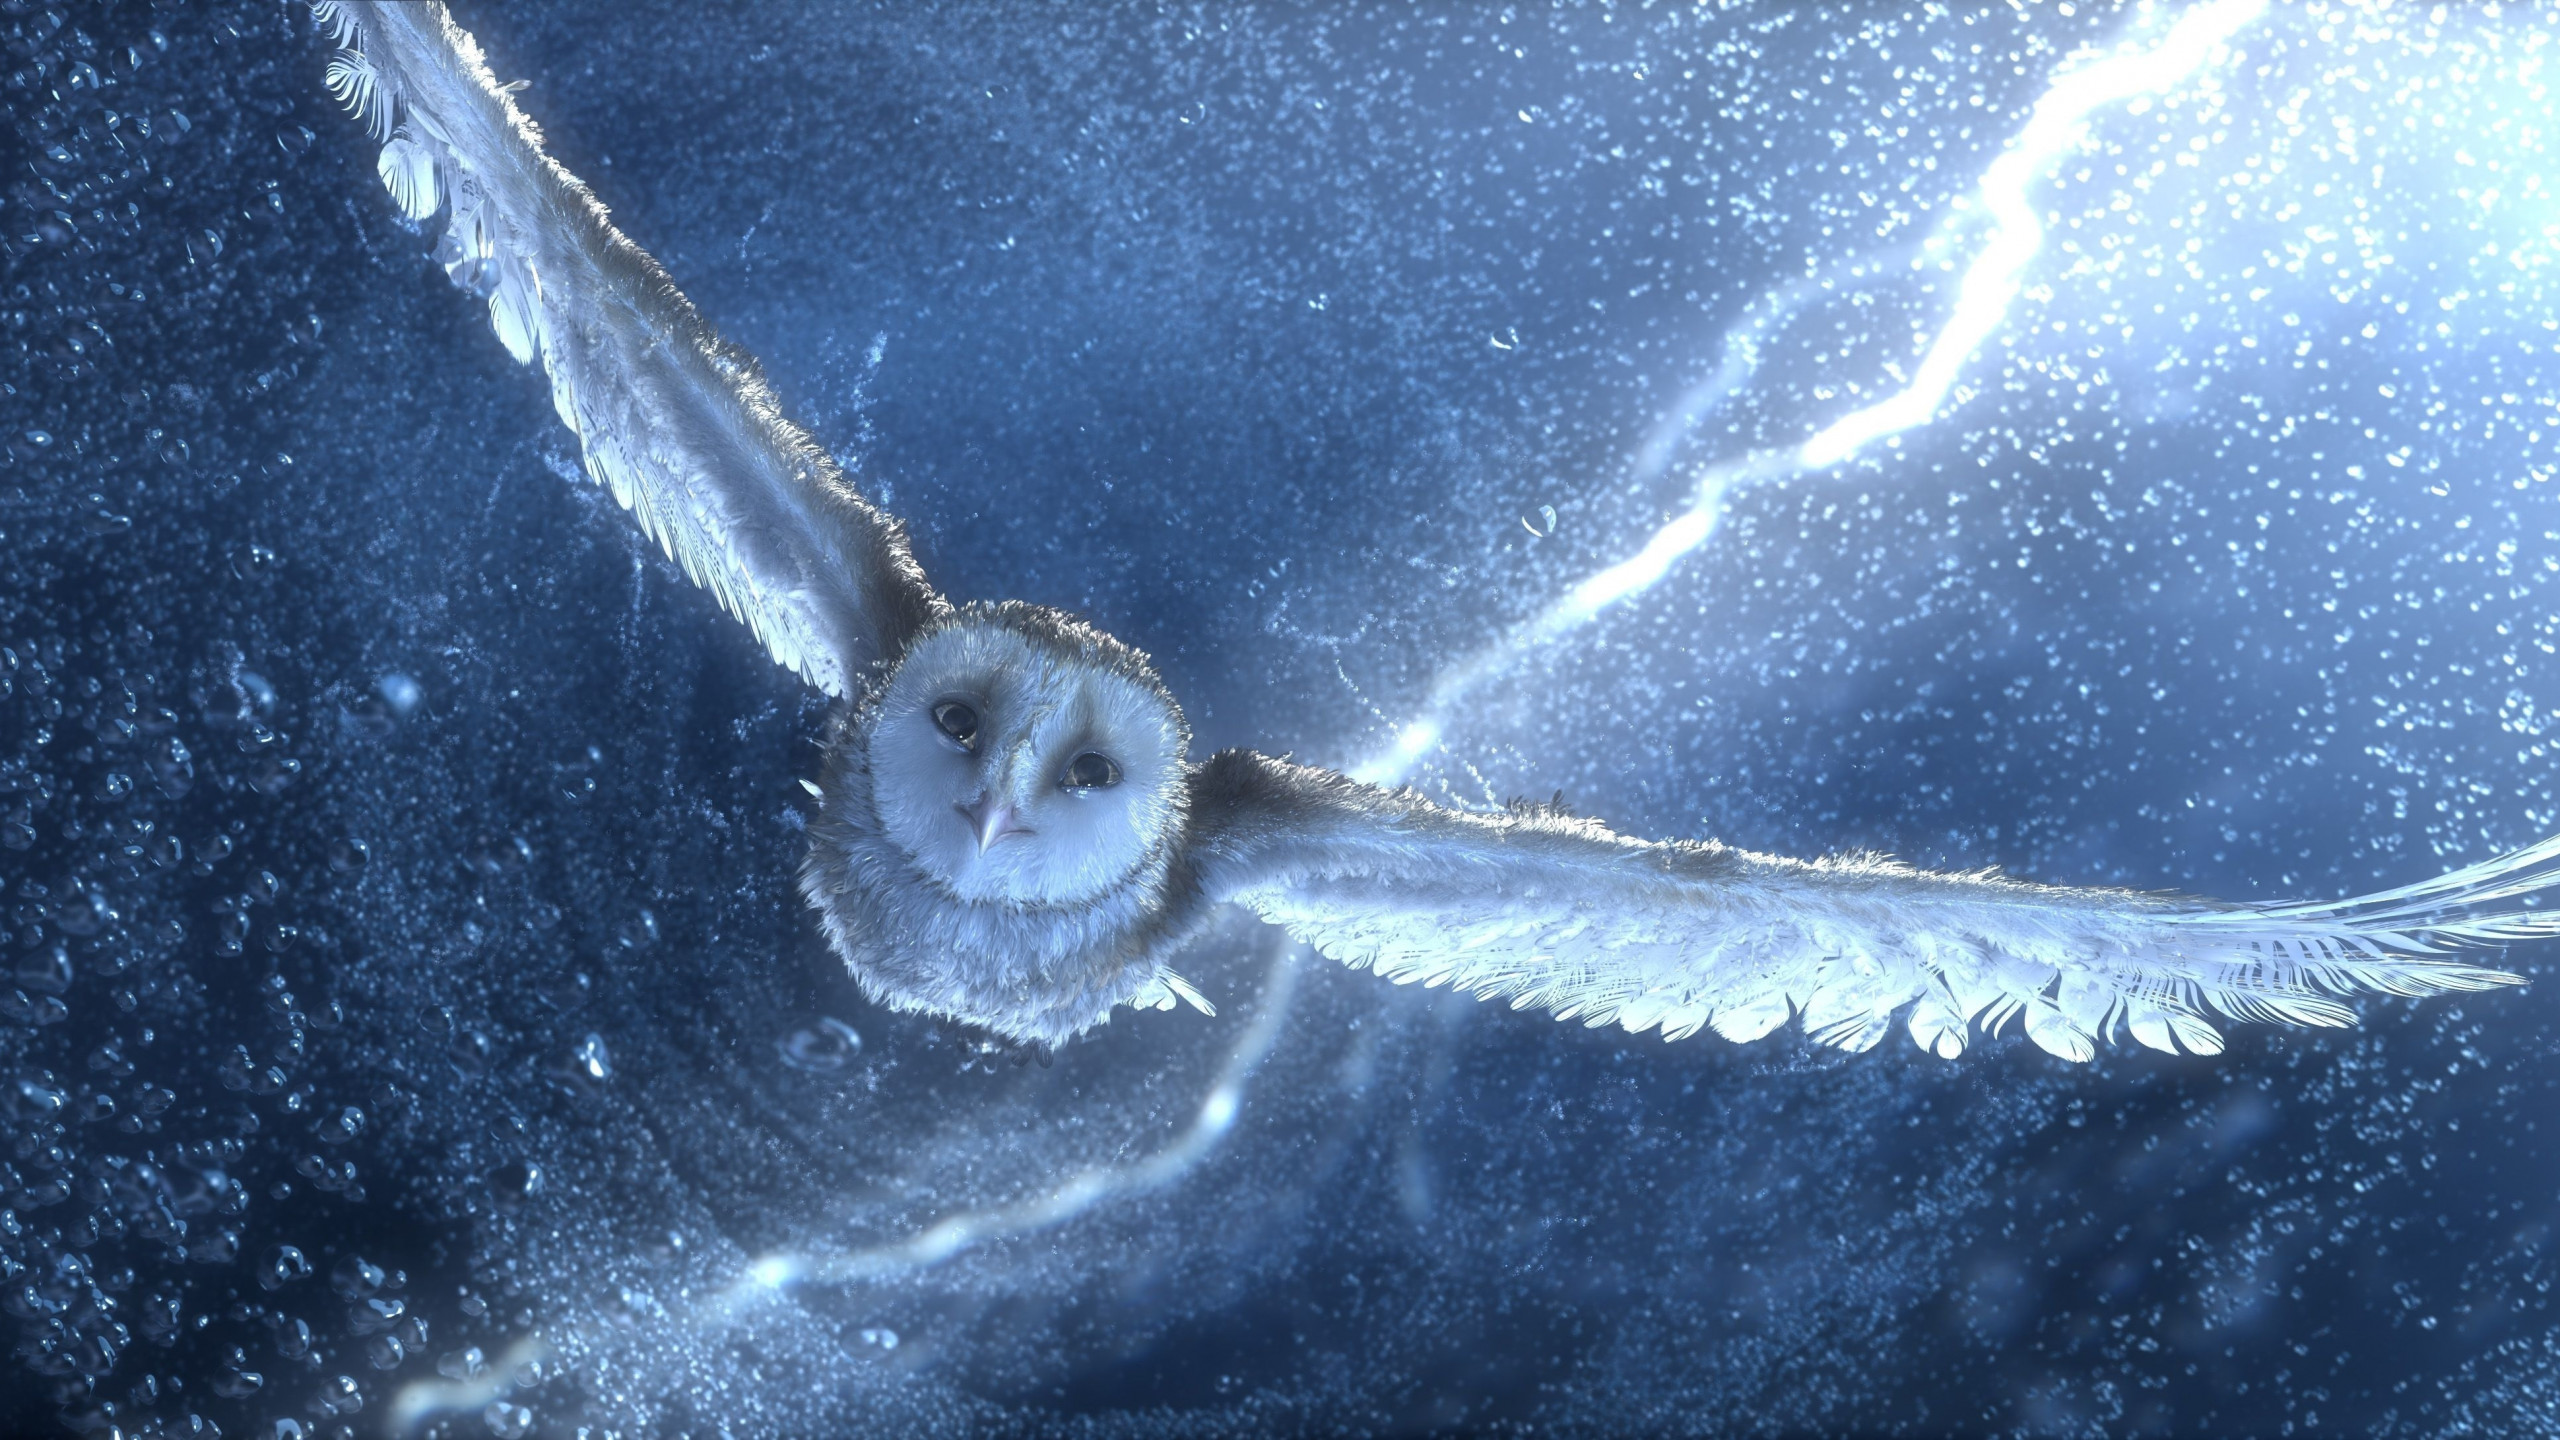 Wallpaper Owl flying snow storm lightning blue bird 